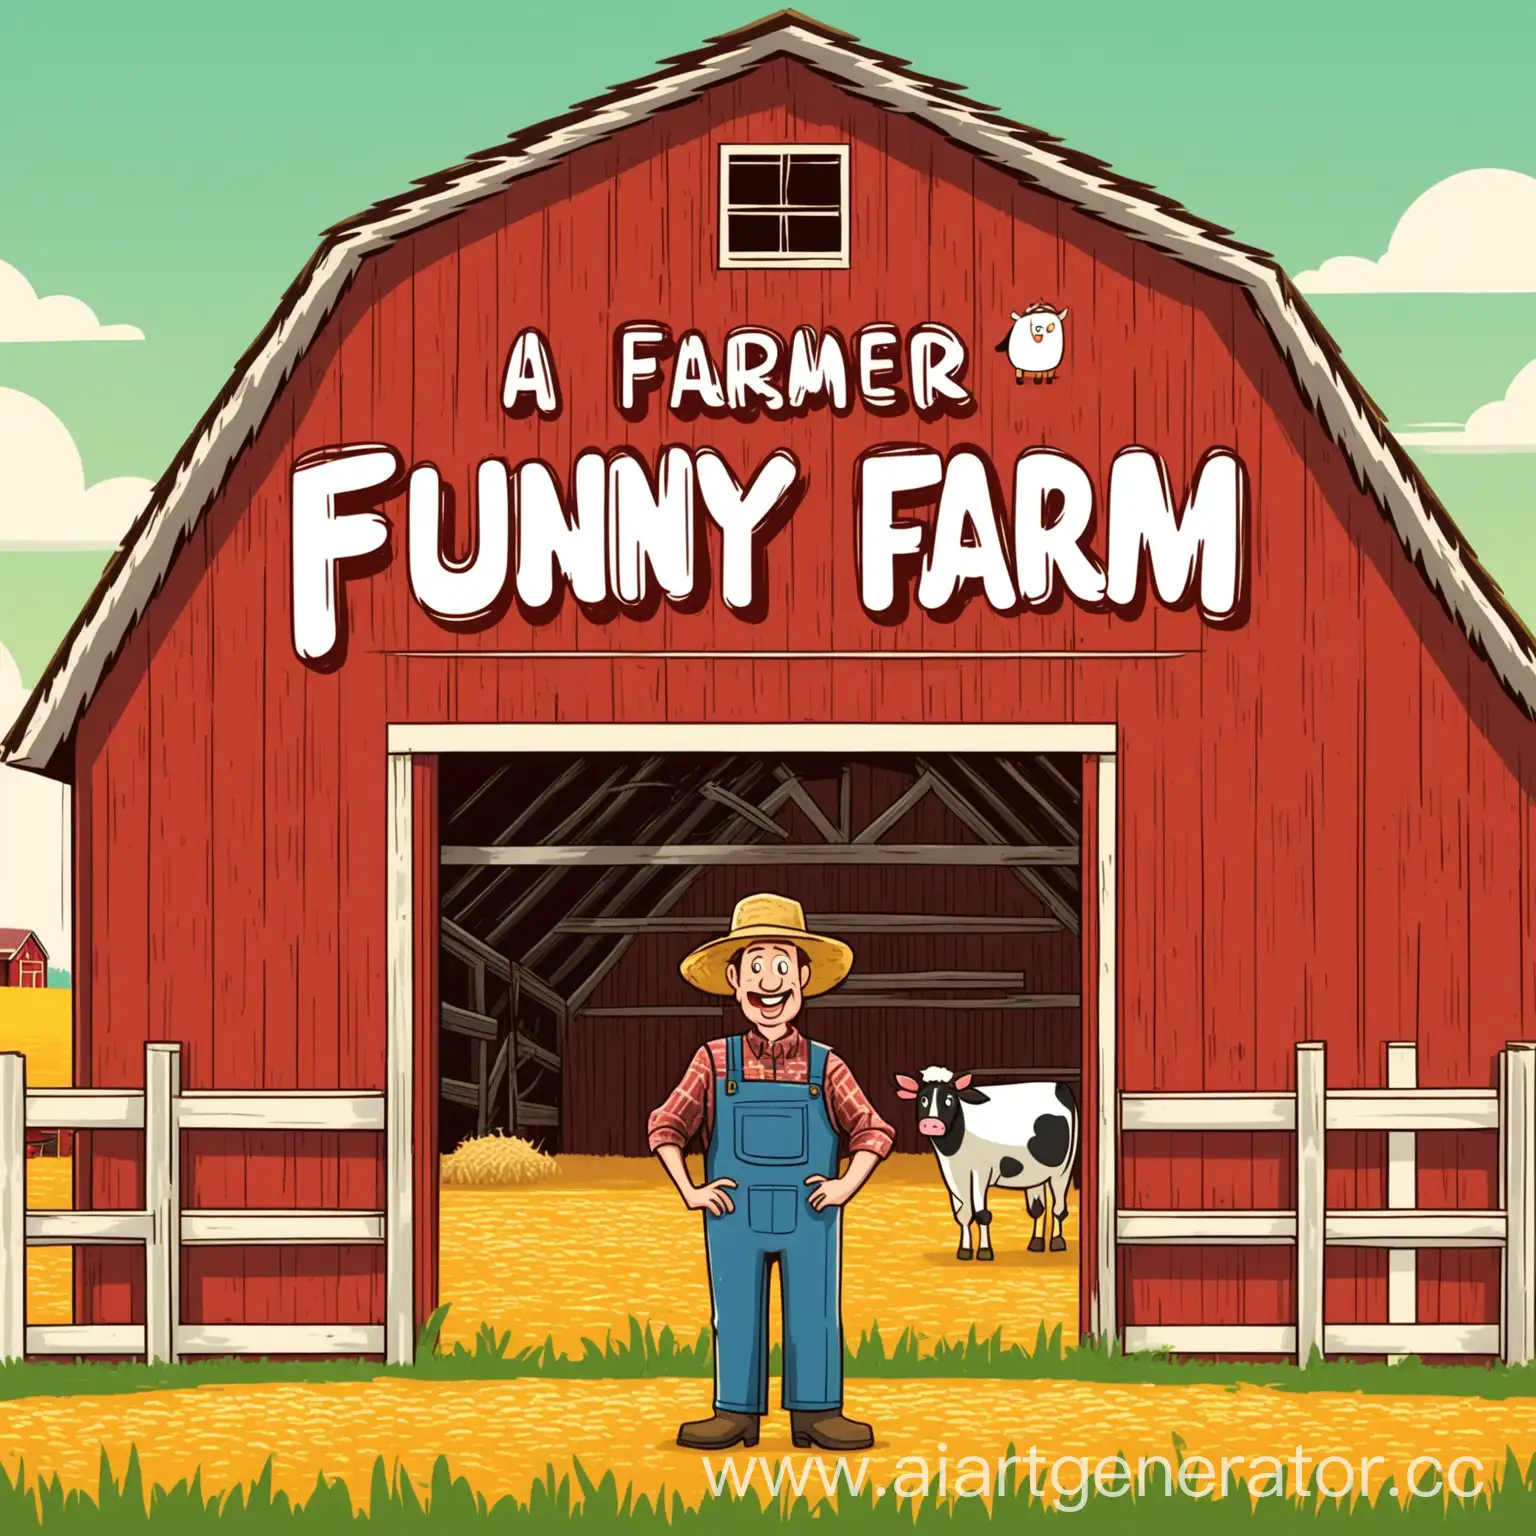 Cartoon-Farmer-Standing-by-Funny-Farm-Barn